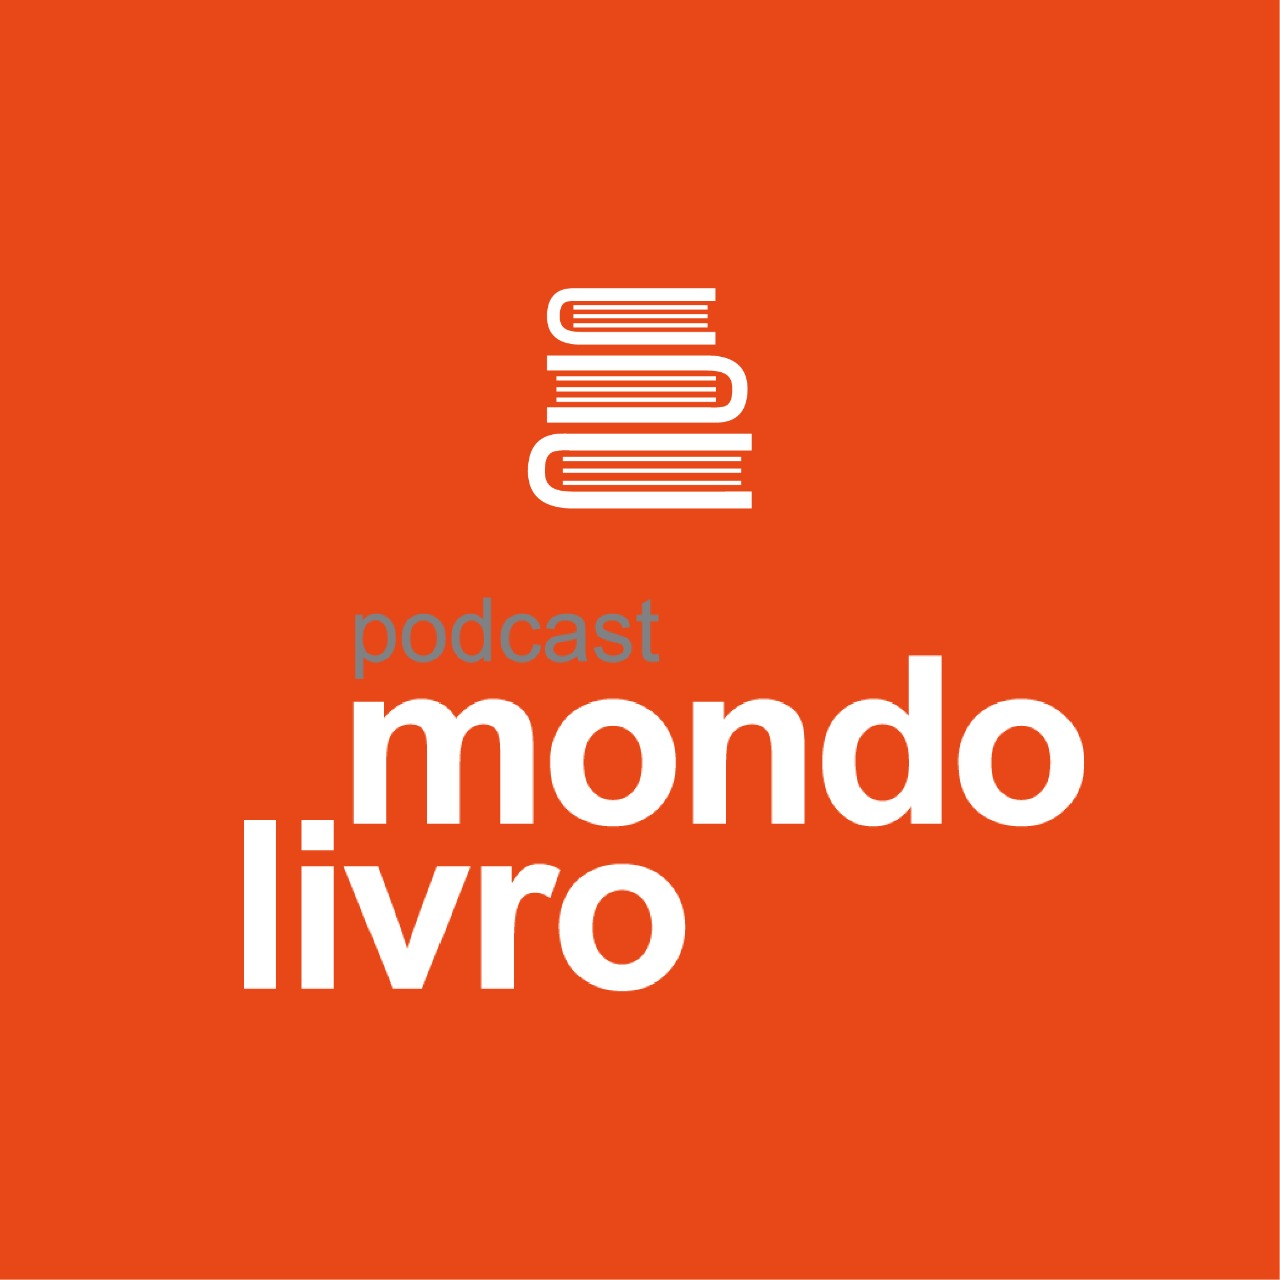 Mondolivro Podcast - Nádia Gotlib no Mondolivro Podcast